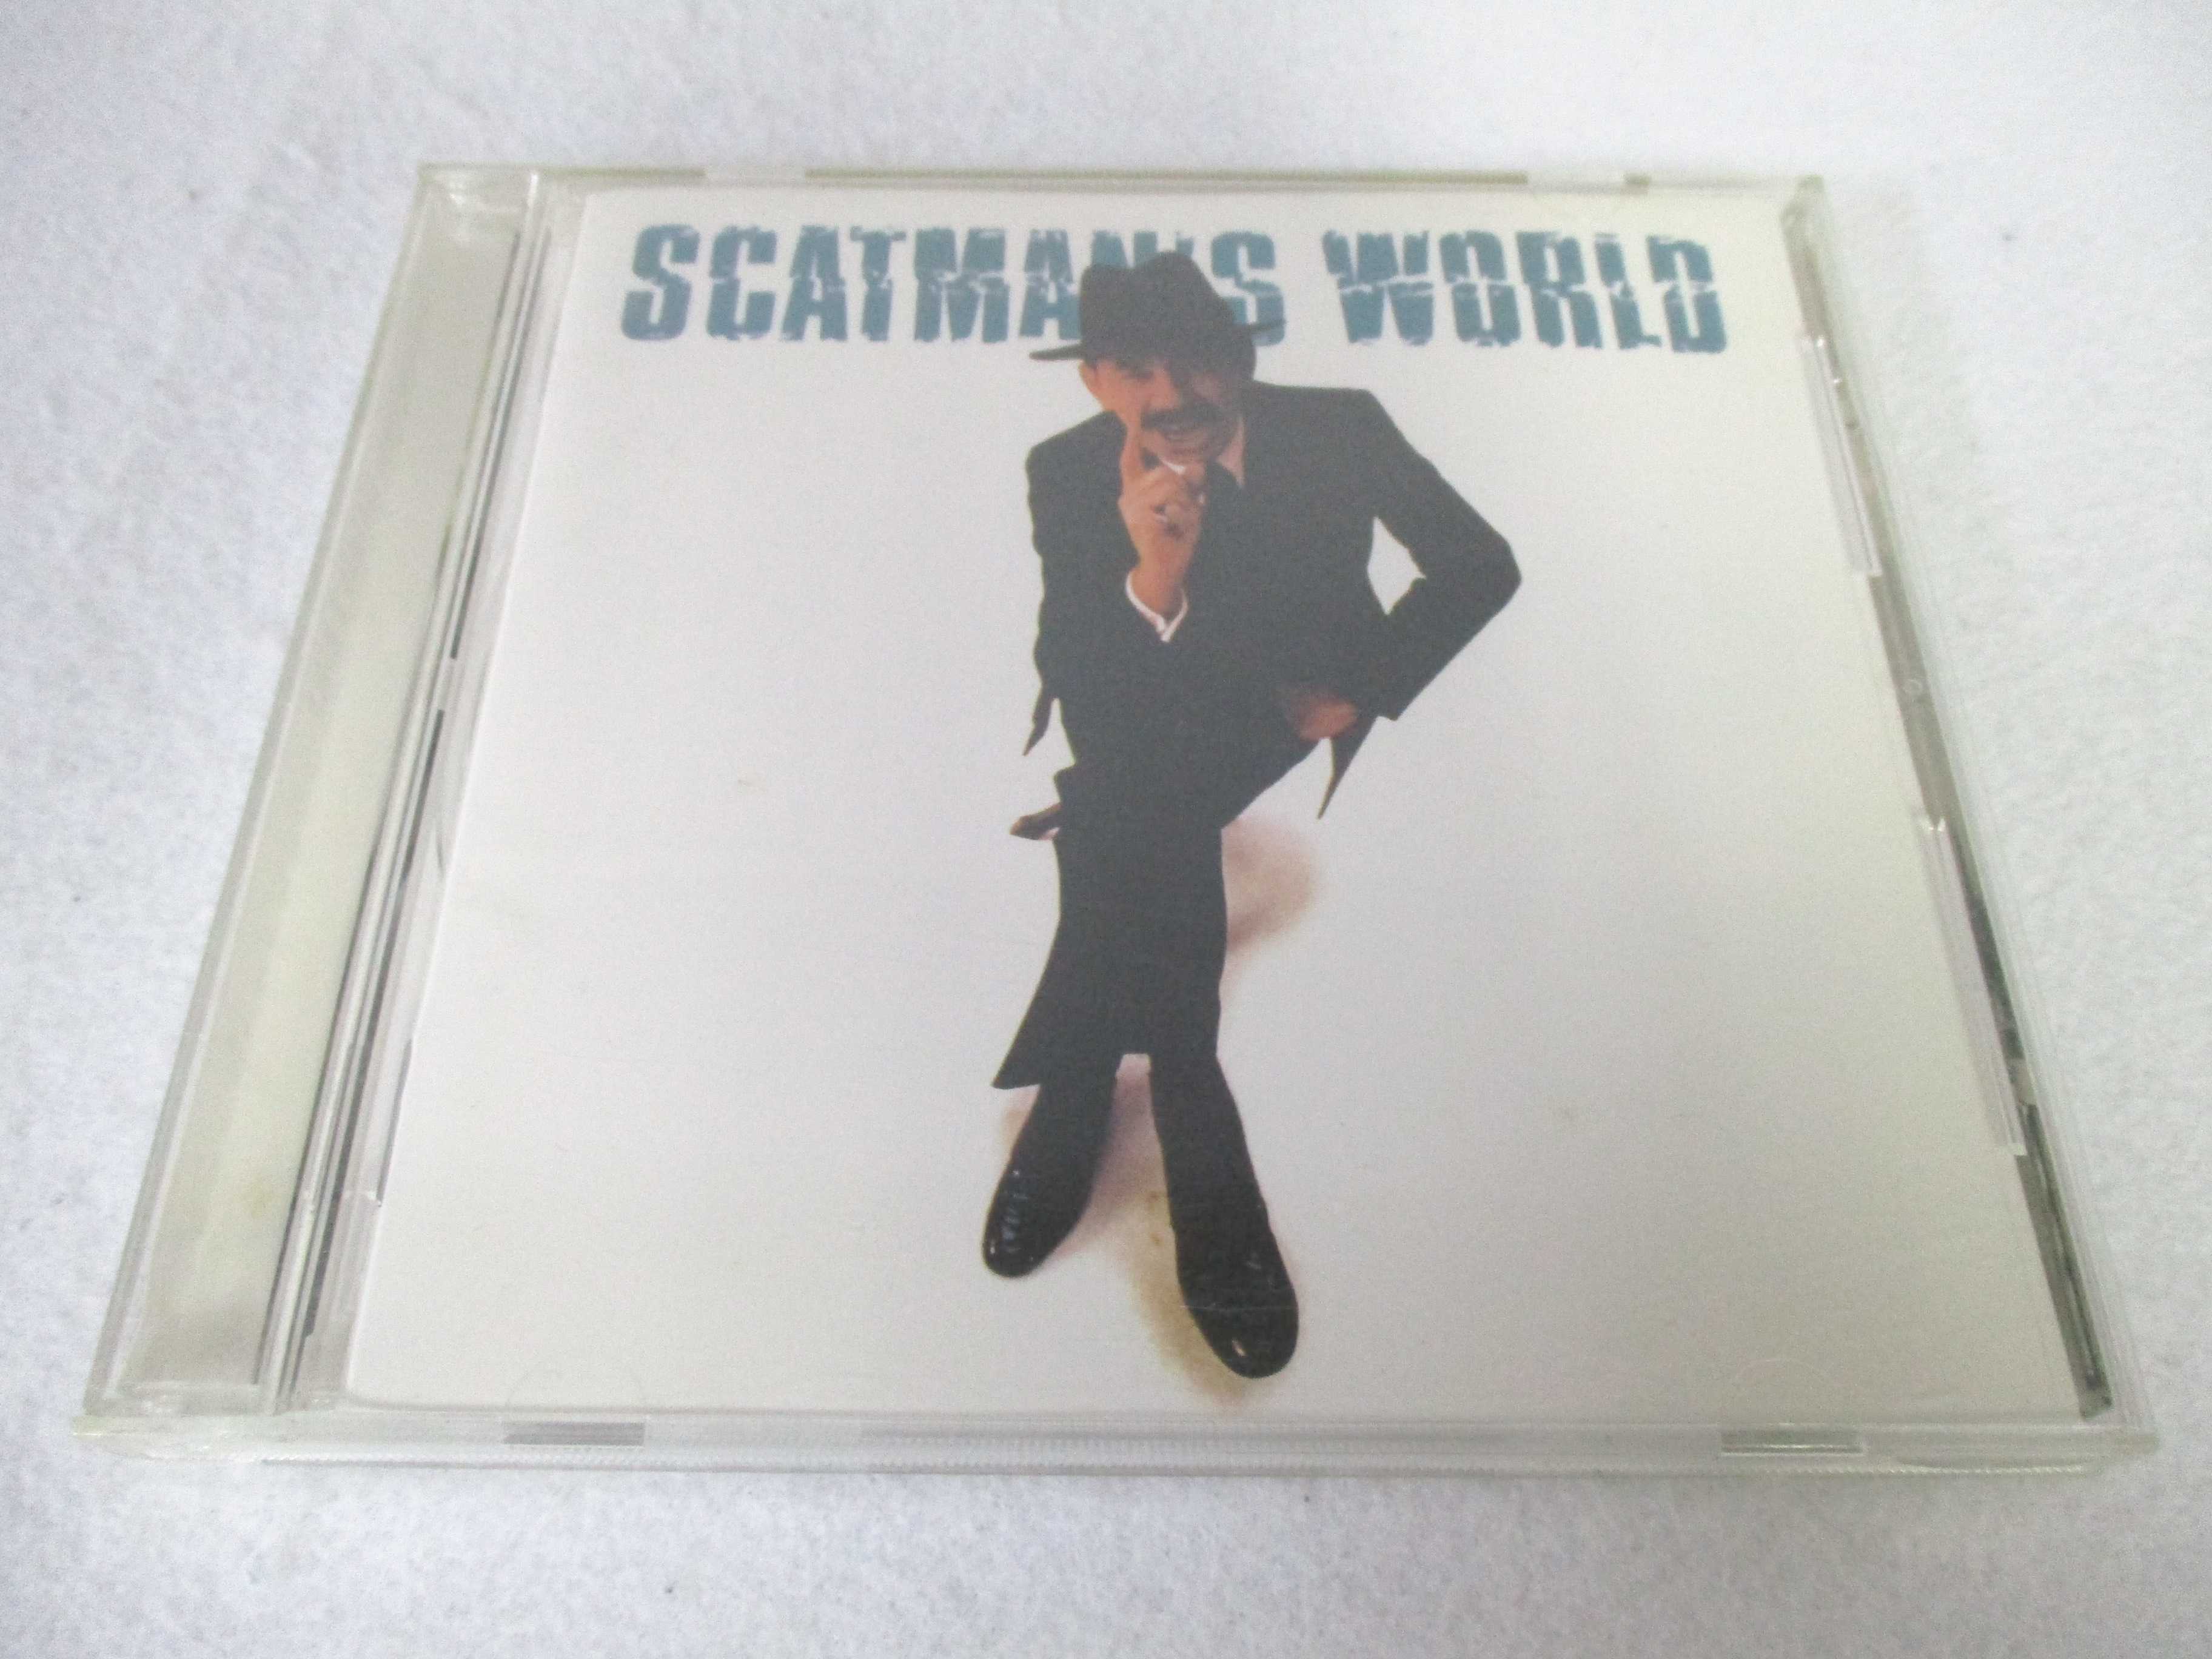 【収録曲】 　【01】Welcome To Scatland 　【02】Scatman’s World 　【03】Only You 　　含む全14曲収録 【状態】歌詞カードに劣化があります。 ★　必ずお読みください　★ -------------------------------------------------------- 【送料について】 　　●　1商品につき送料：300円 　　●　商品代金10,000円以上で送料無料 　　●　商品の個数により、ゆうメール、佐川急便、ヤマト運輸 　　　　ゆうパックのいずれかで発送いたします。 　　当社指定の配送となります。 　　配送業者の指定は承っておりません。 -------------------------------------------------------- 【商品について】 　　●　VHS、DVD、CD、本はレンタル落ちの中古品で 　　　　ございます。 　　 　　 　　●　ケース・ジャケット・テープ本体に 　　　　バーコードシール等が貼ってある場合があります。 　　　　クリーニングを行いますが、汚れ・シール・若干のキズ等が 　　　　残る場合がございます。 　　●　映像・音声チェックは行っておりませんので、 　　　　神経質な方のご購入はお控えください。 --------------------------------------------------------